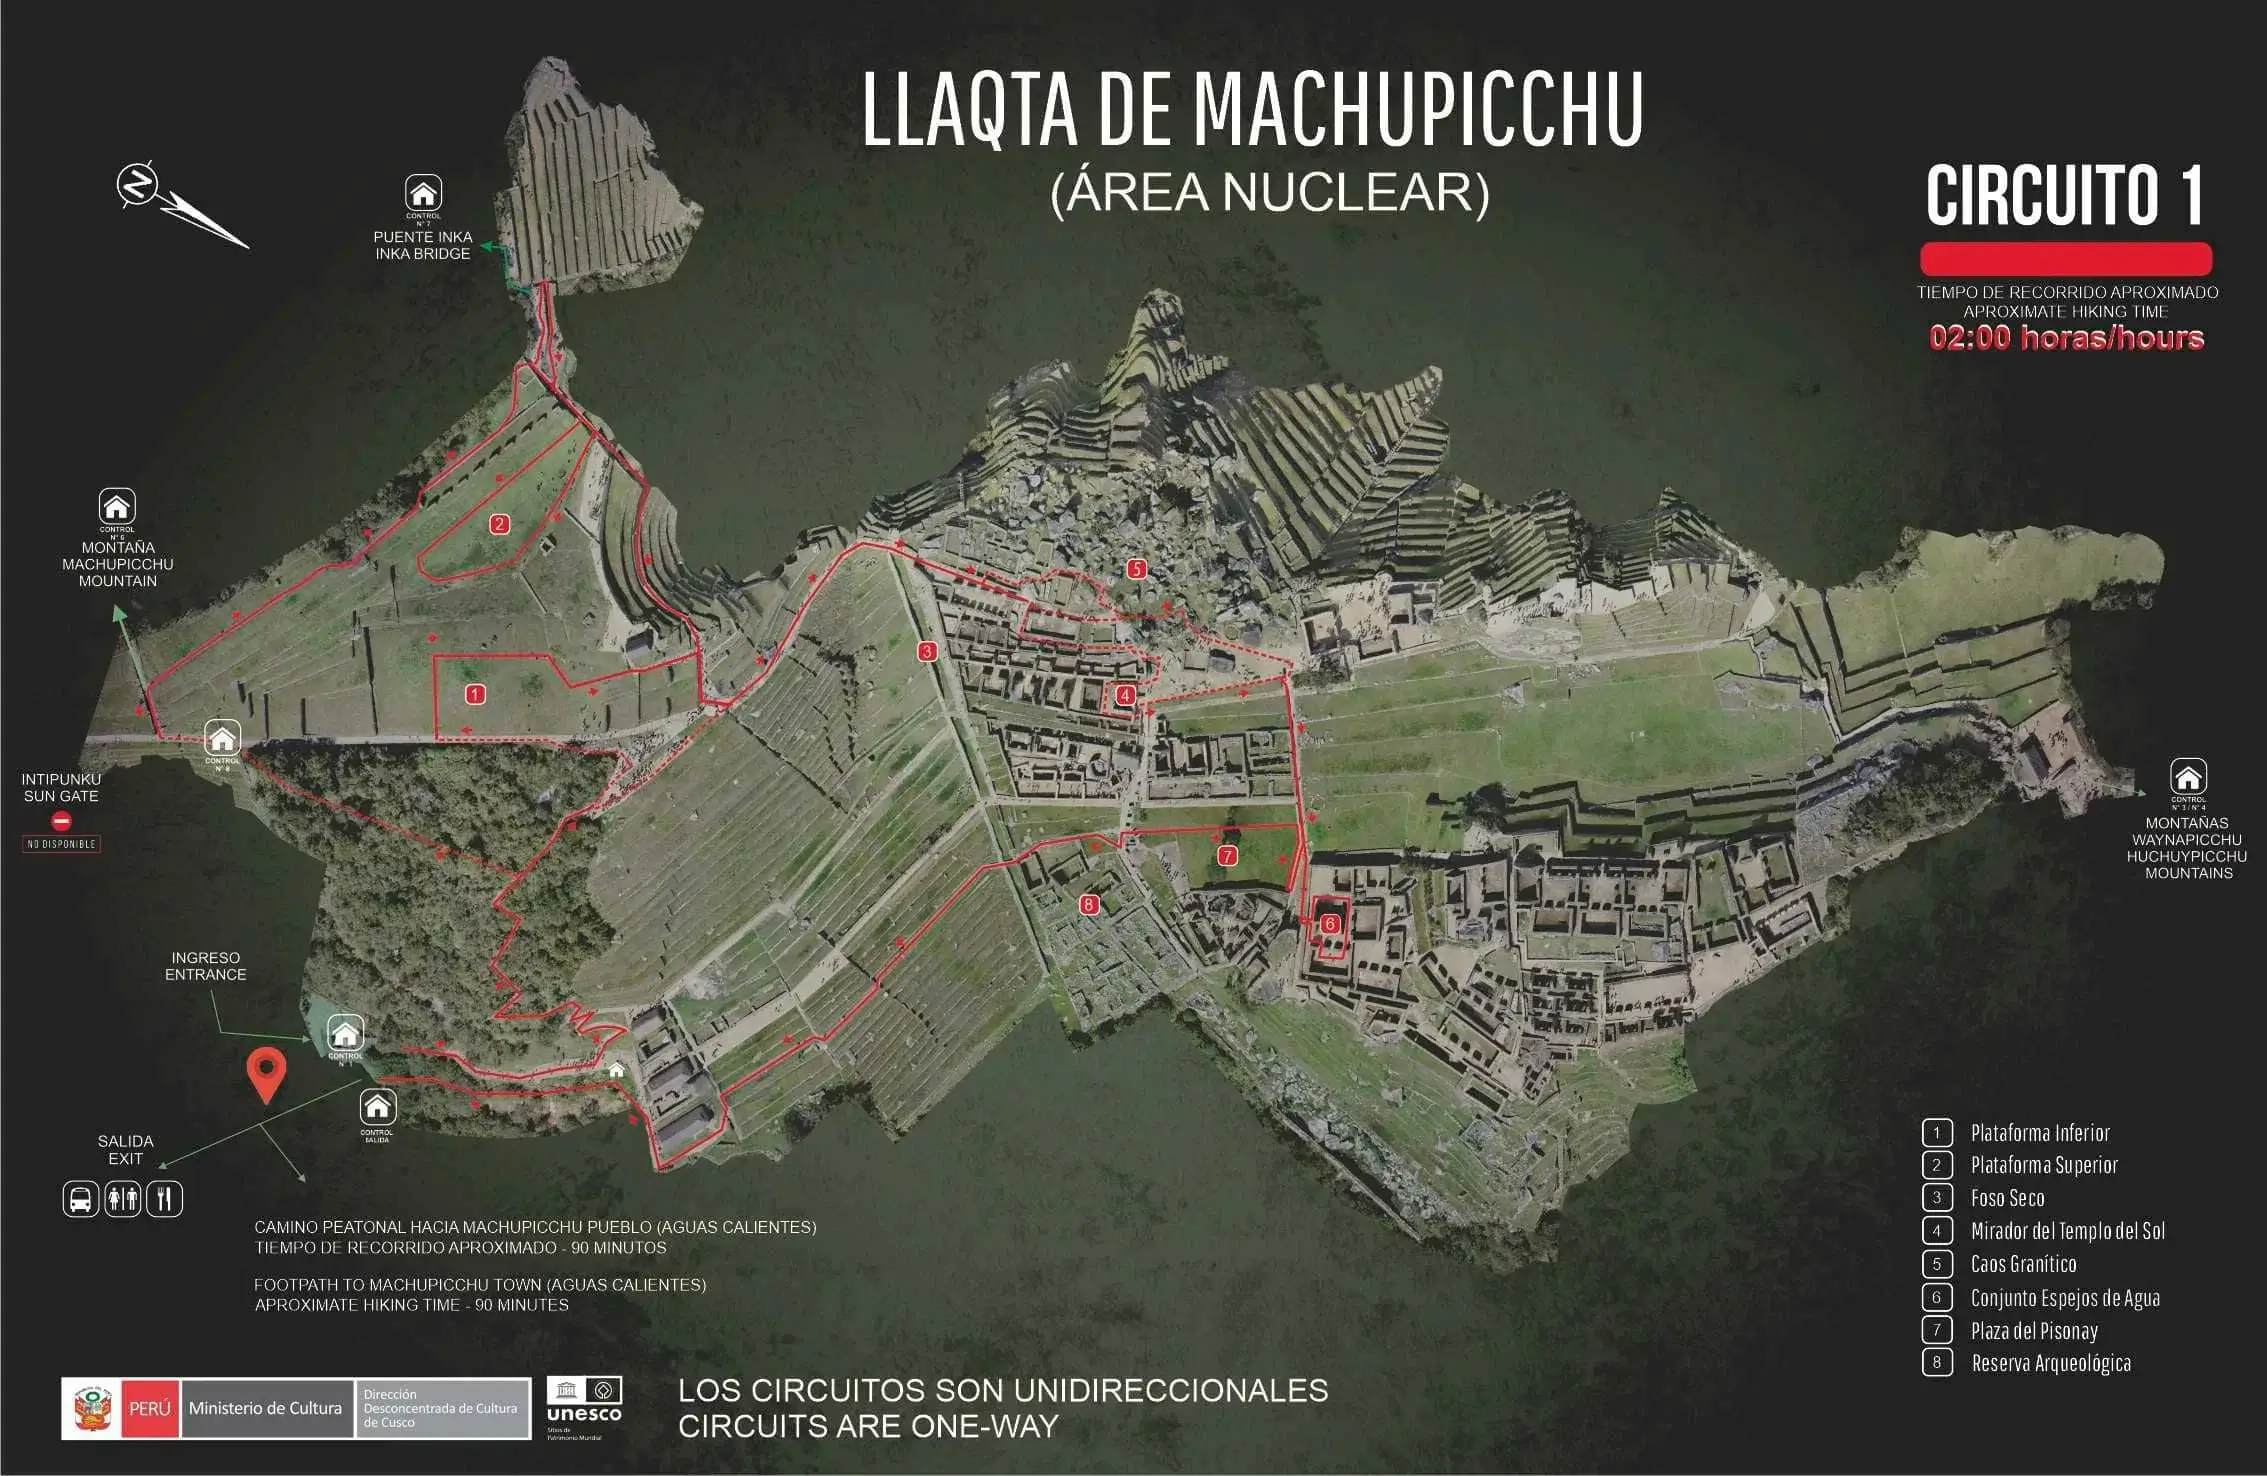 circuit 1 machu picchu - Inca Trail to Machu Picchu